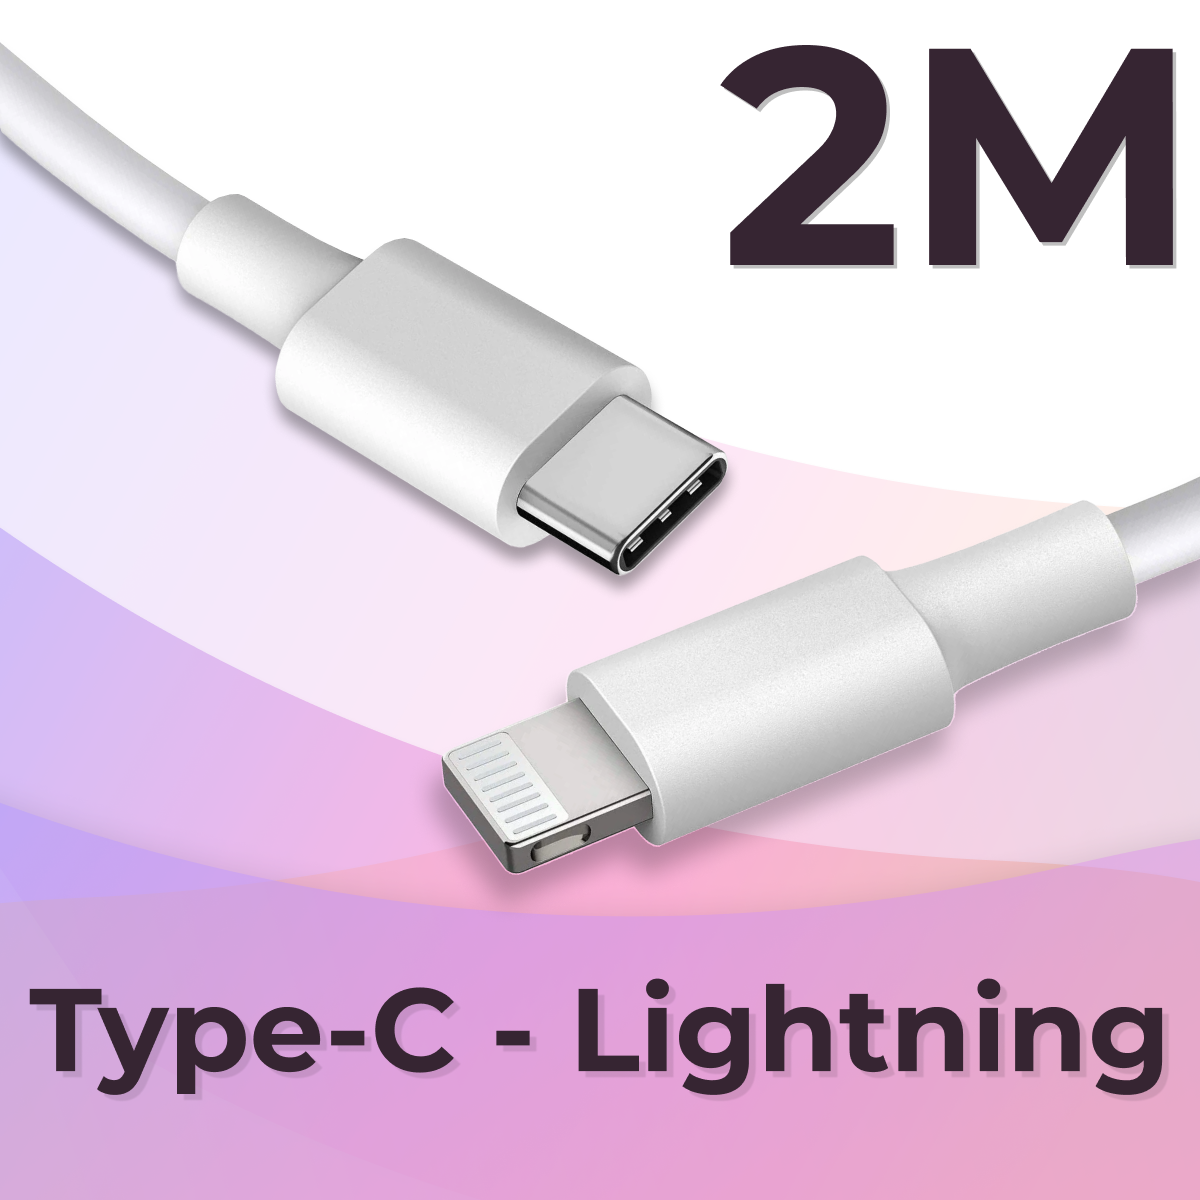 Кабель USB Type C / Lightning (2 метра) Apple iPhone AirPods / Провод быстрая зарядка / ЮСБ Тайп Си Лайтнинг / Шнур для зарядного устройства Белый